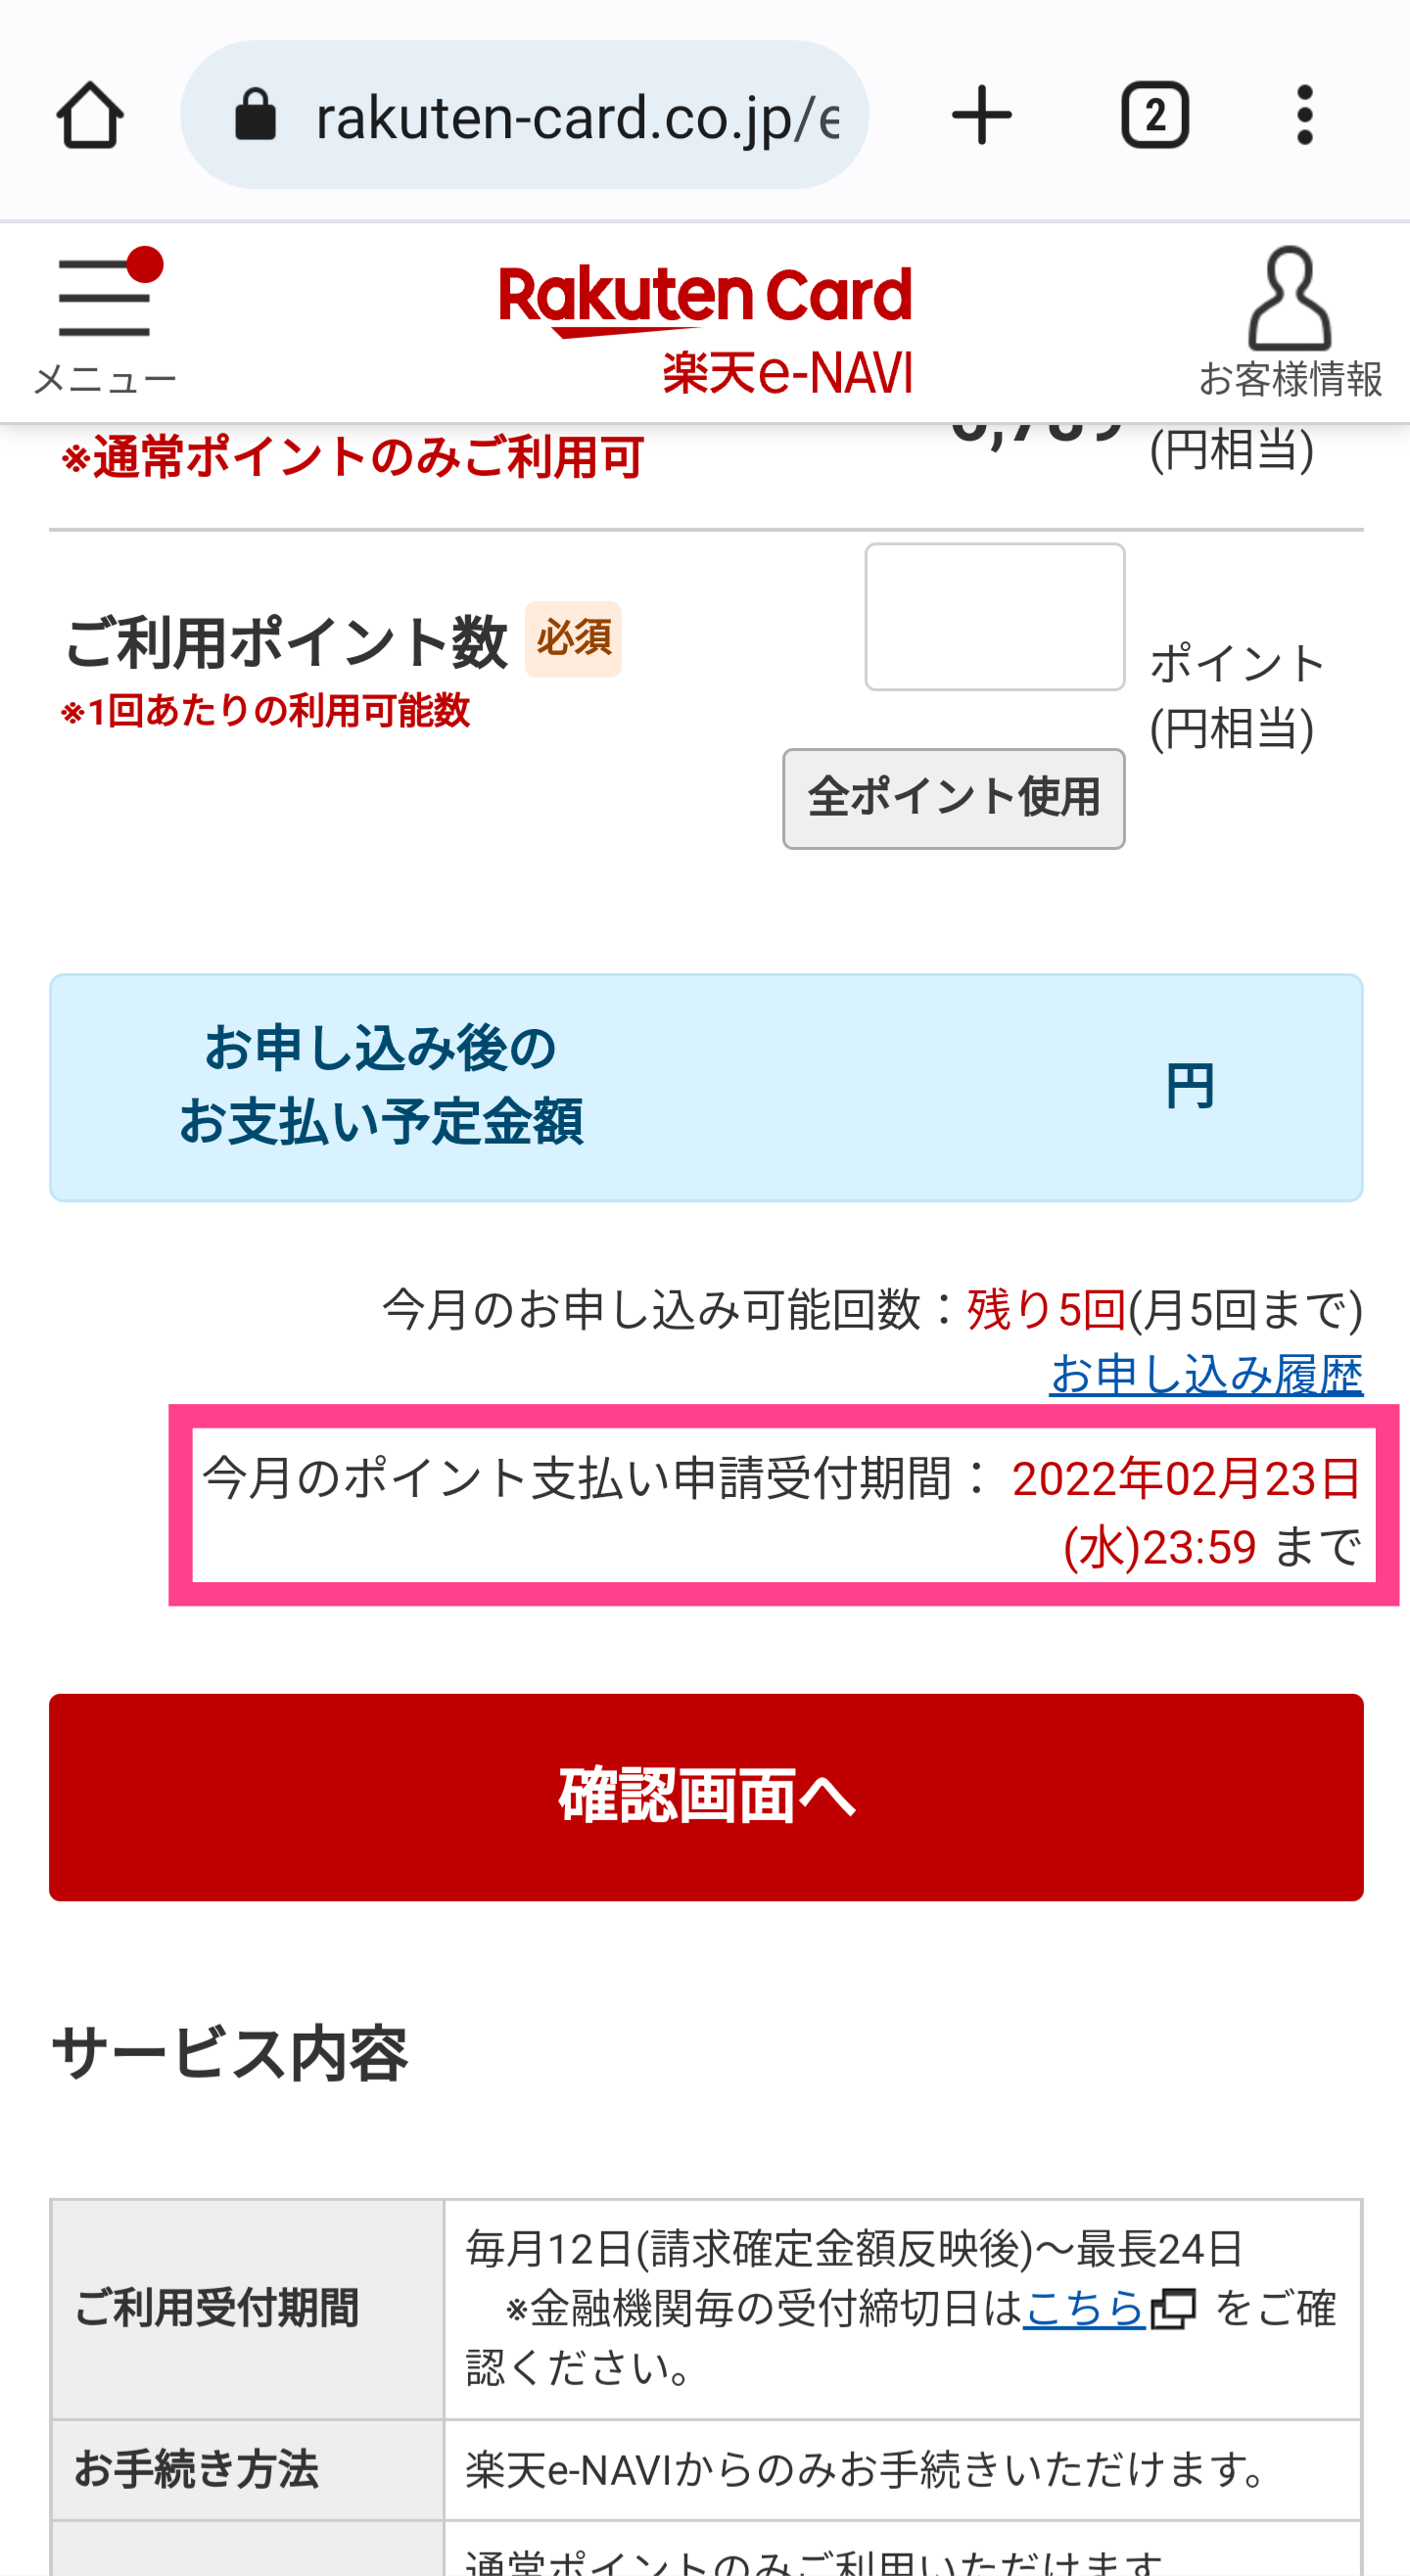 Rakuten-カードポイント充当申請期限